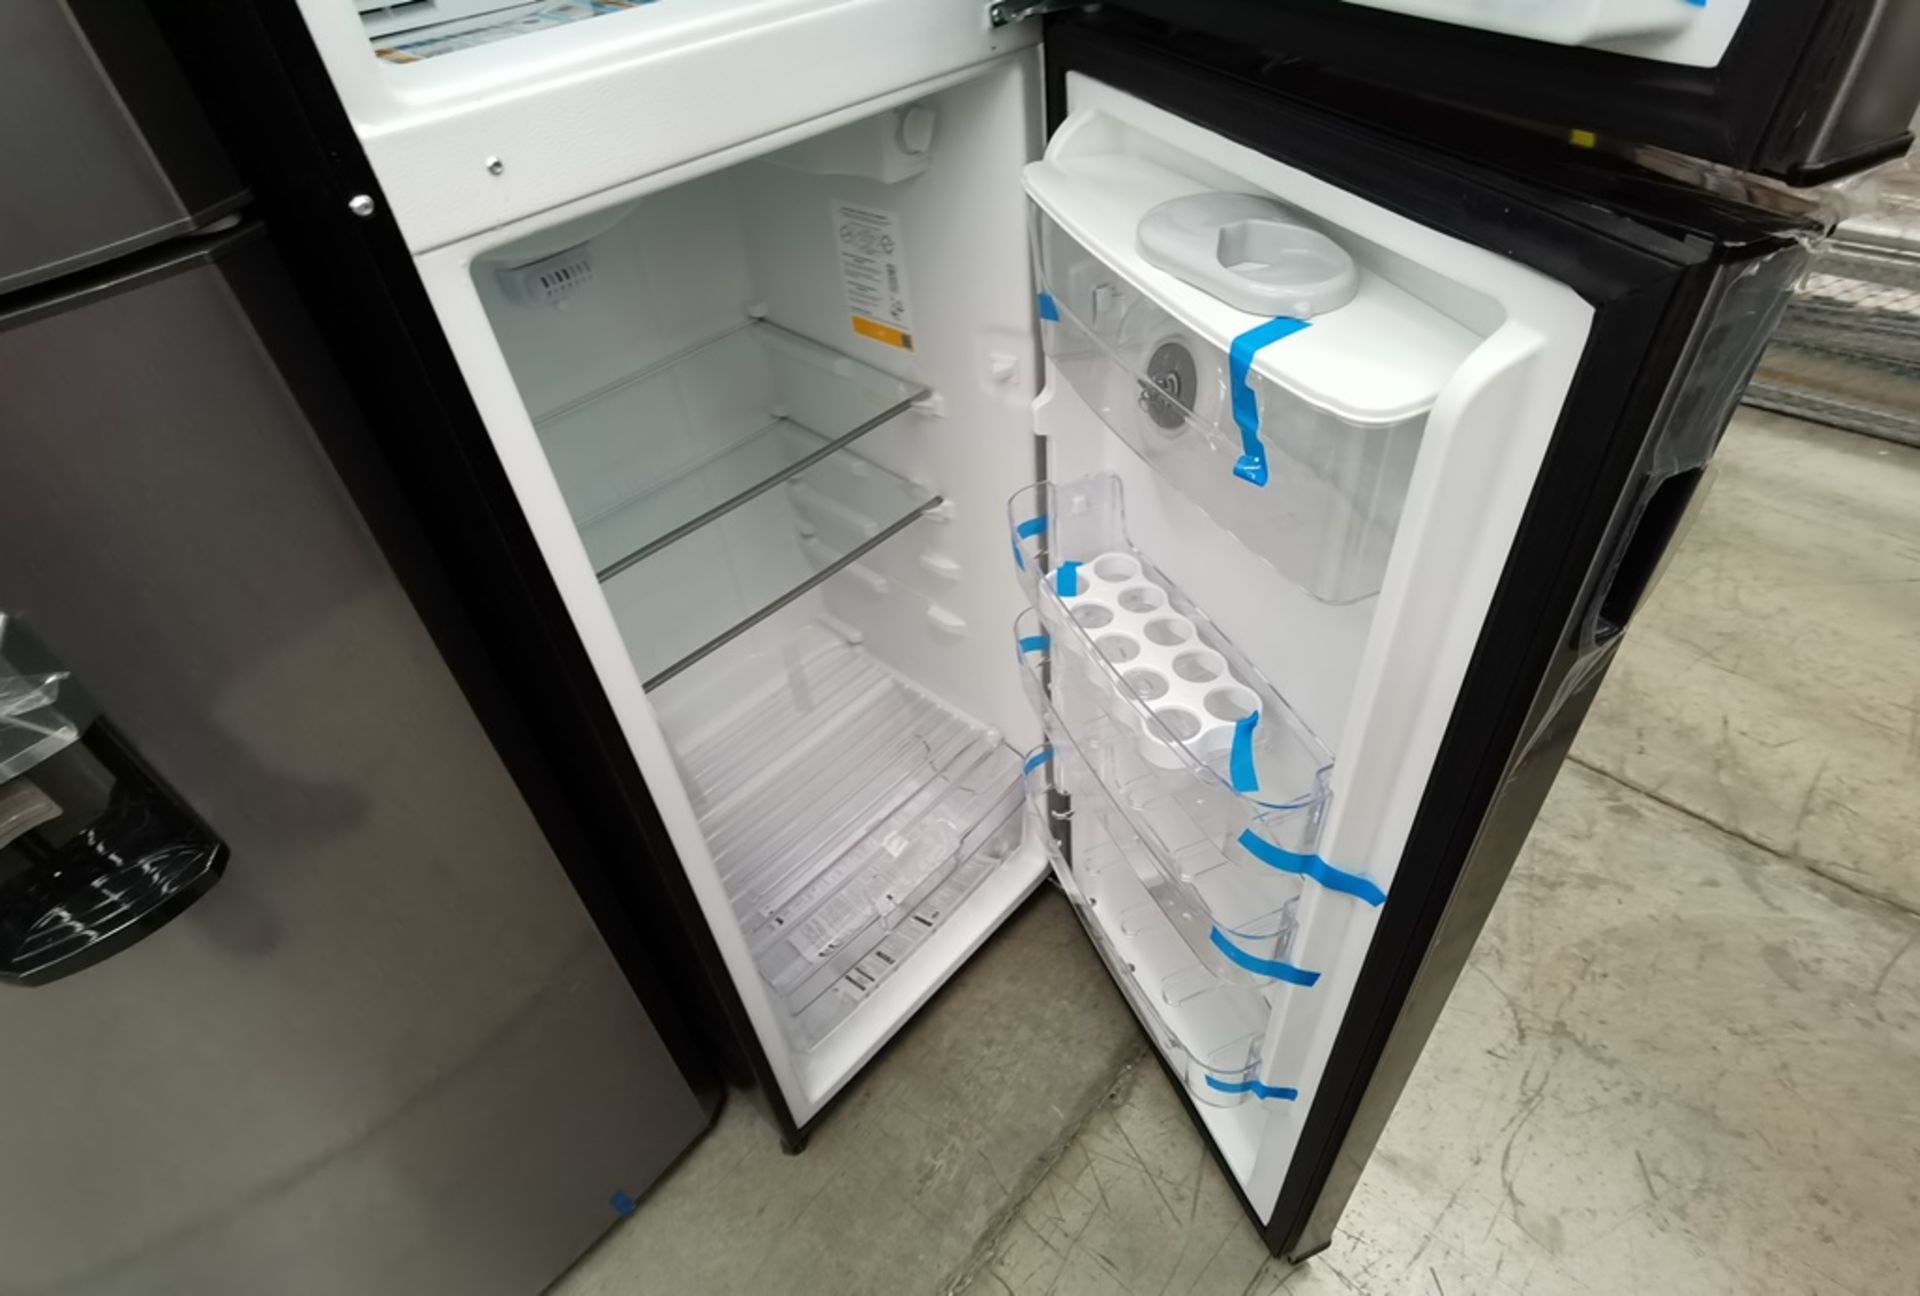 Lote De 2 Refrigeradores Contiene: 1 Refrigerador Marca Across, Modelo AT9007G03, Serie VRB1230980, - Image 14 of 16